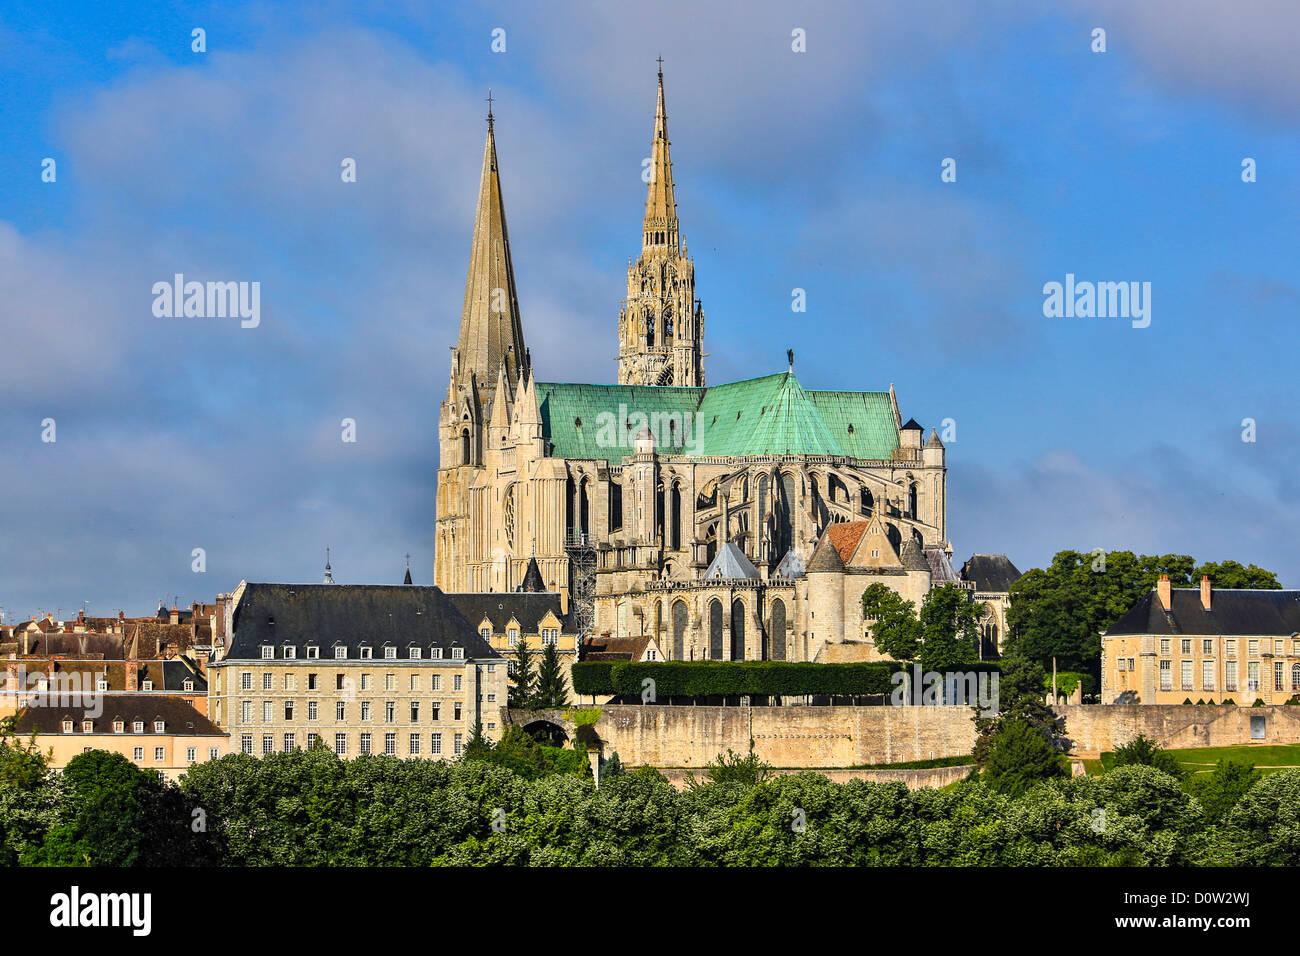 France, Europe, voyage, Chartres, cathédrale, patrimoine mondial, l'architecture, l'histoire, cité médiévale, tourisme, Unesco Banque D'Images